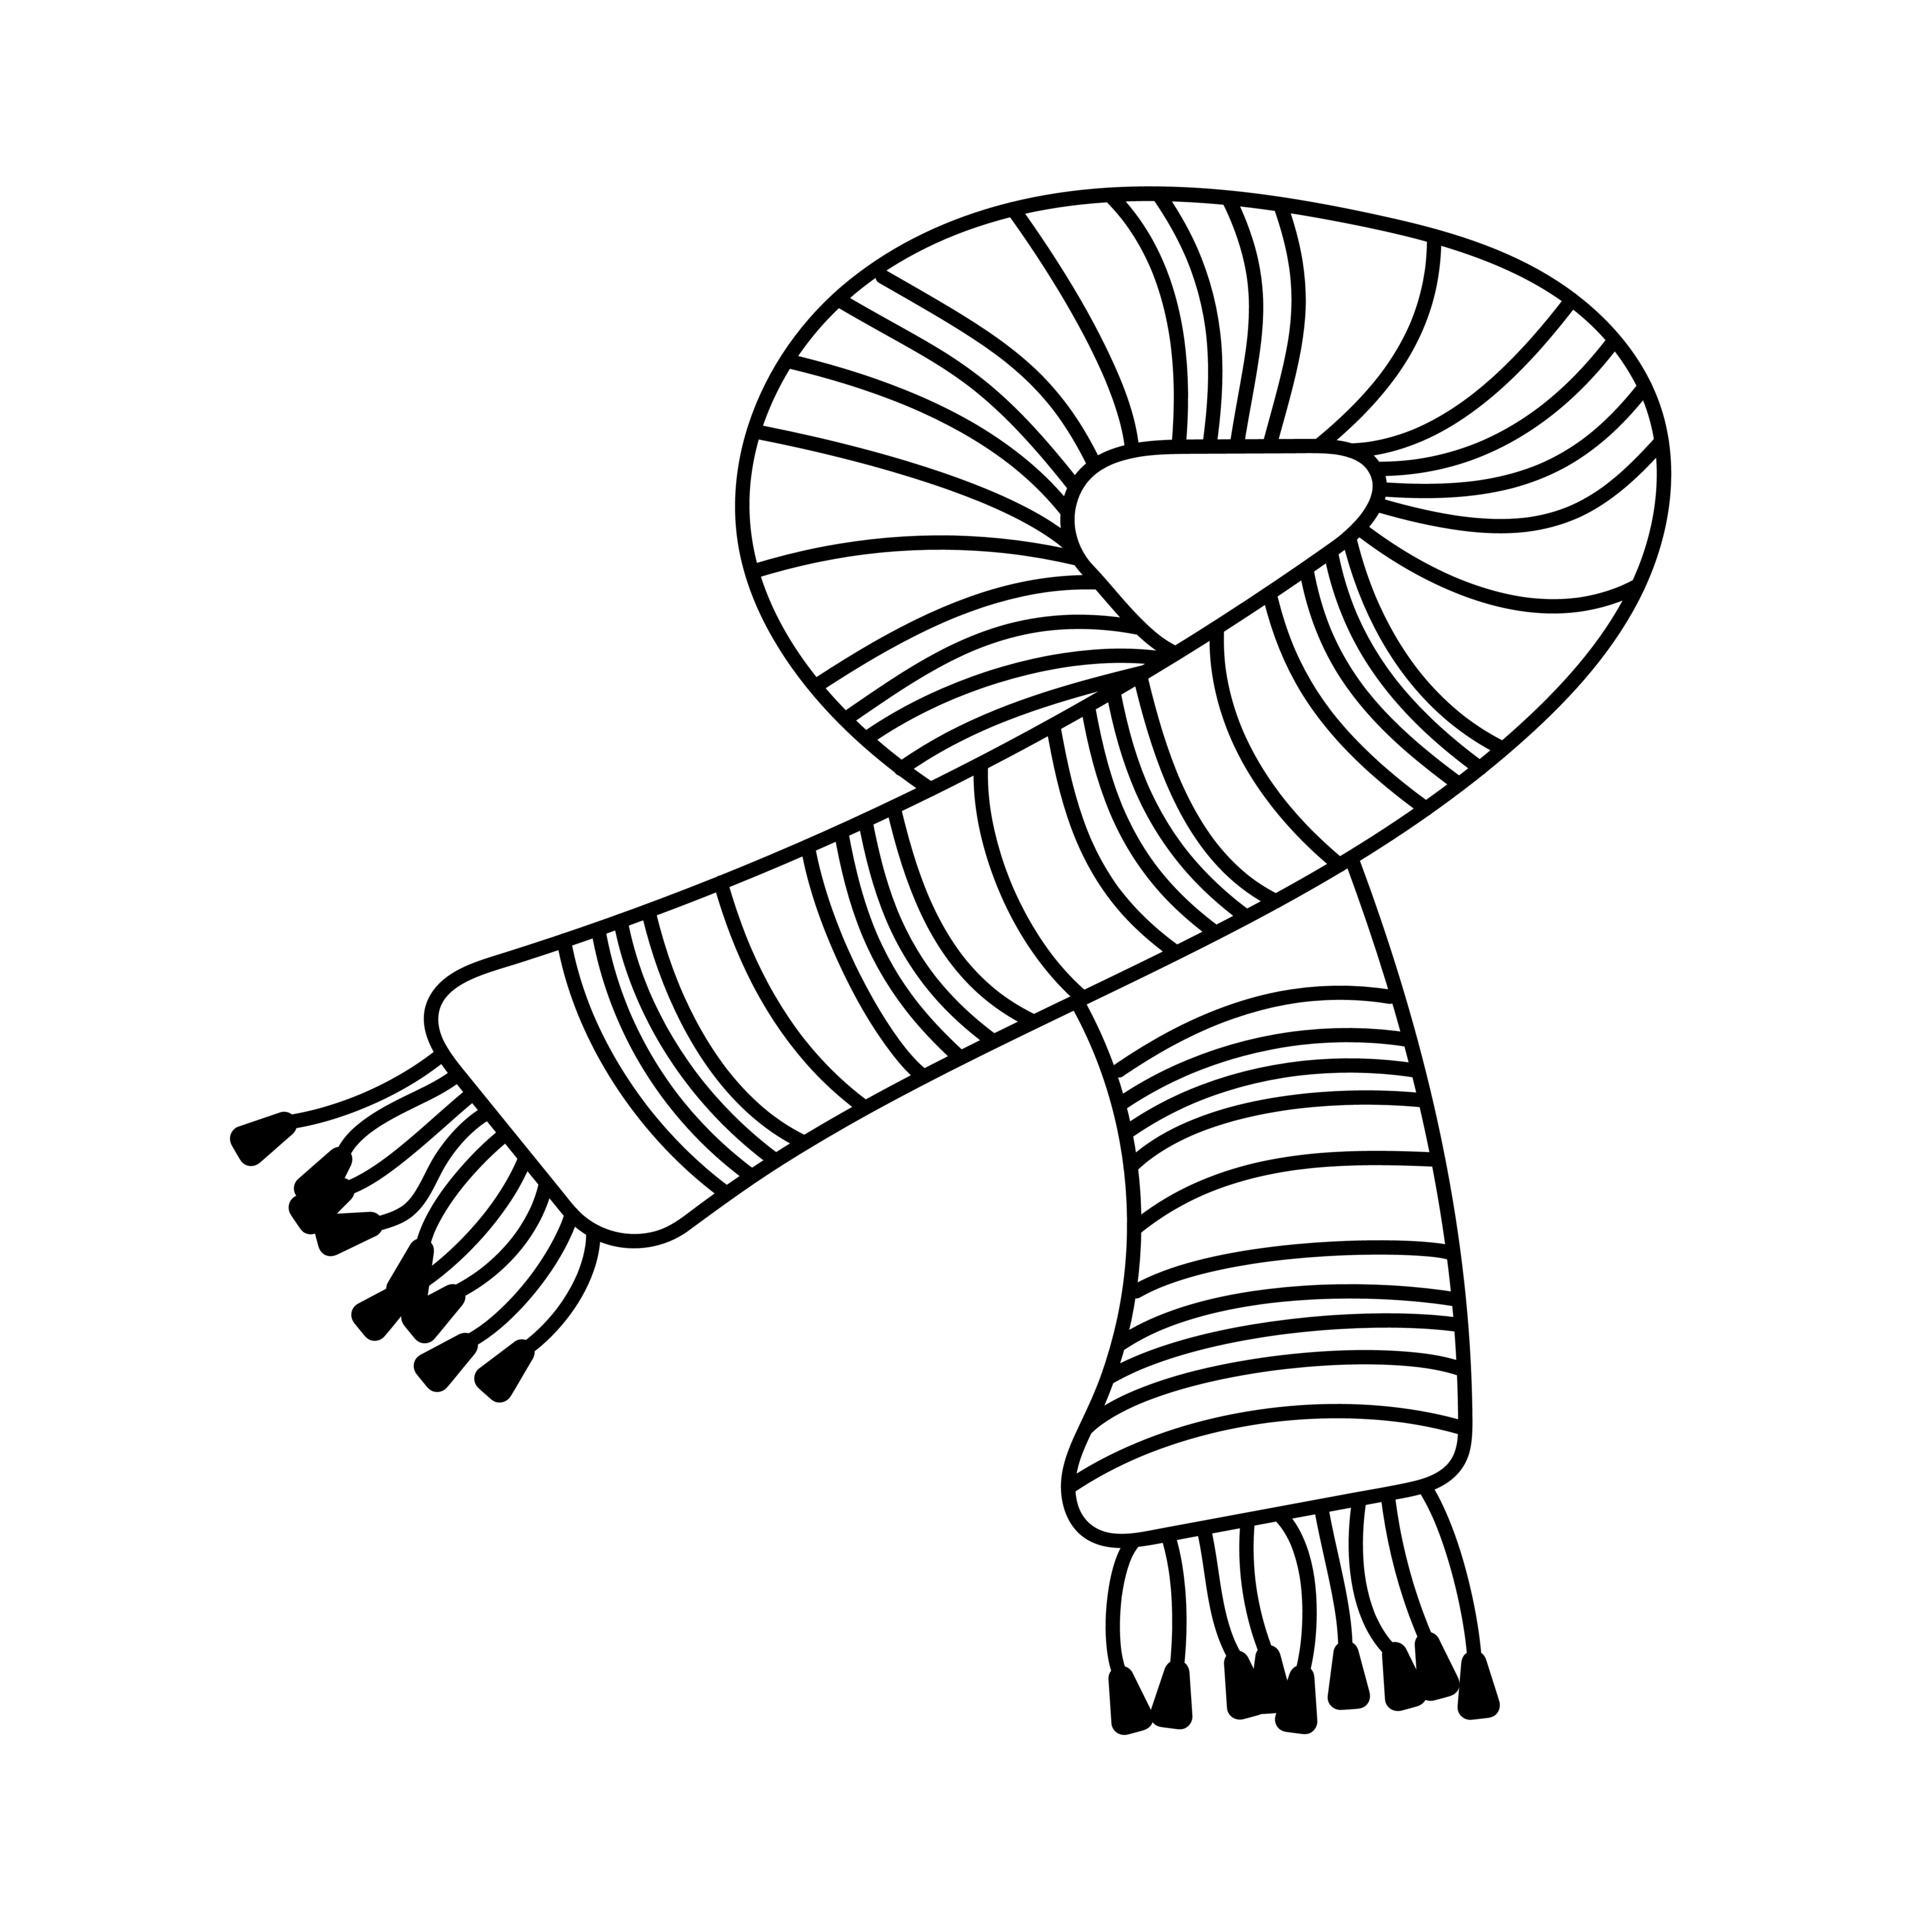 écharpe tricotée à rayures chaudes dans le style doodle. 3805386 -  Telecharger Vectoriel Gratuit, Clipart Graphique, Vecteur Dessins et  Pictogramme Gratuit